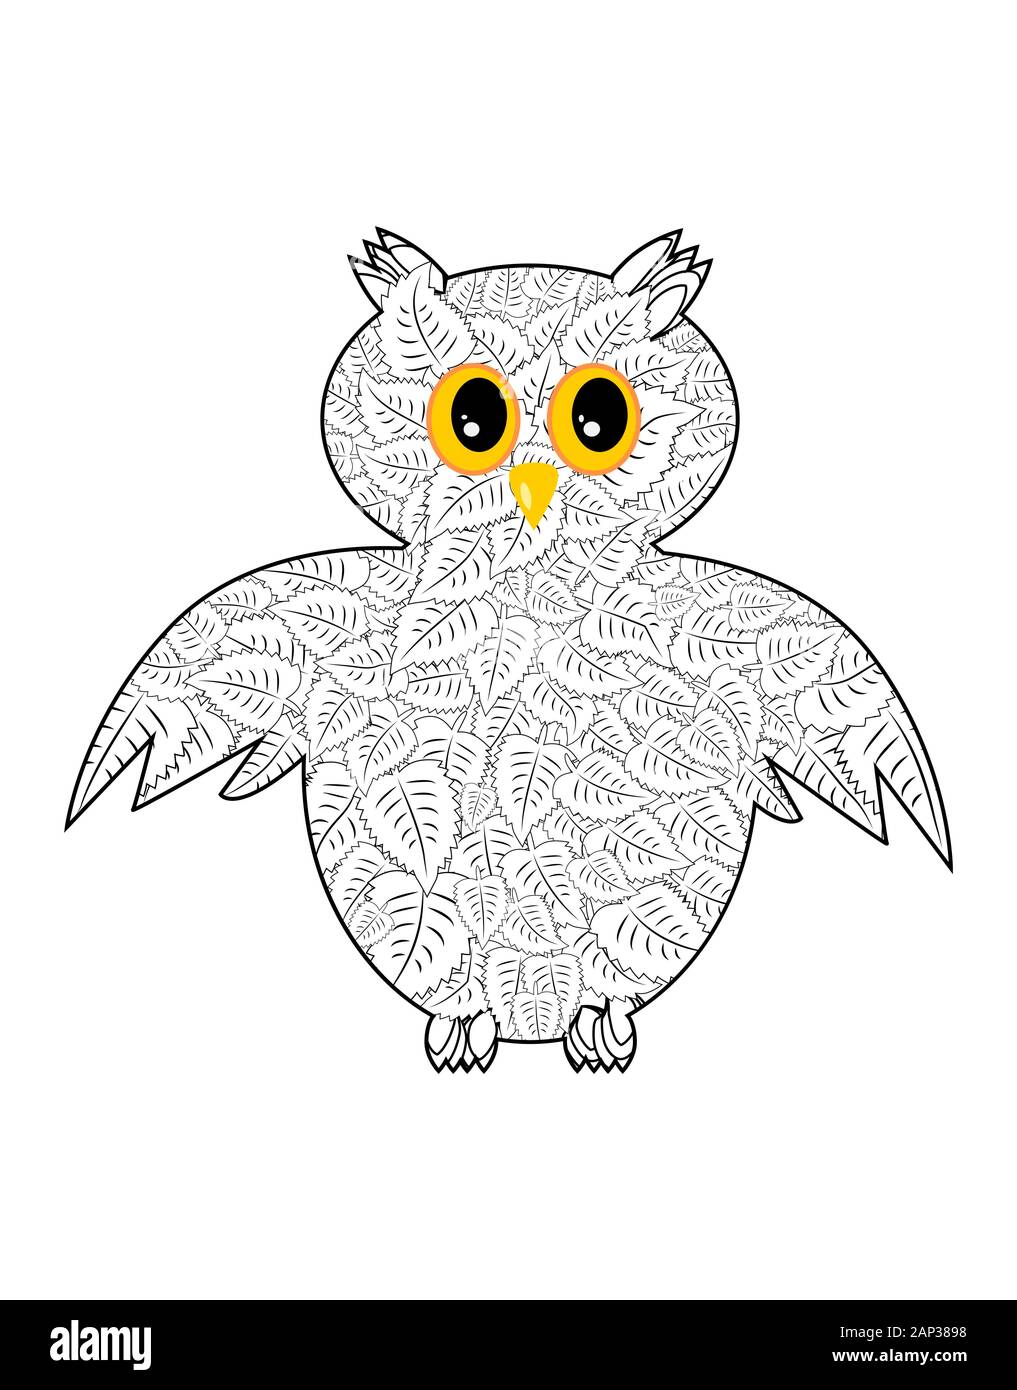 Owl ornementales, zentangled ethniques mascot, amulette, masque de oiseau, animal à motifs pour des profils anti stress pages à colorier. Illustration de Vecteur